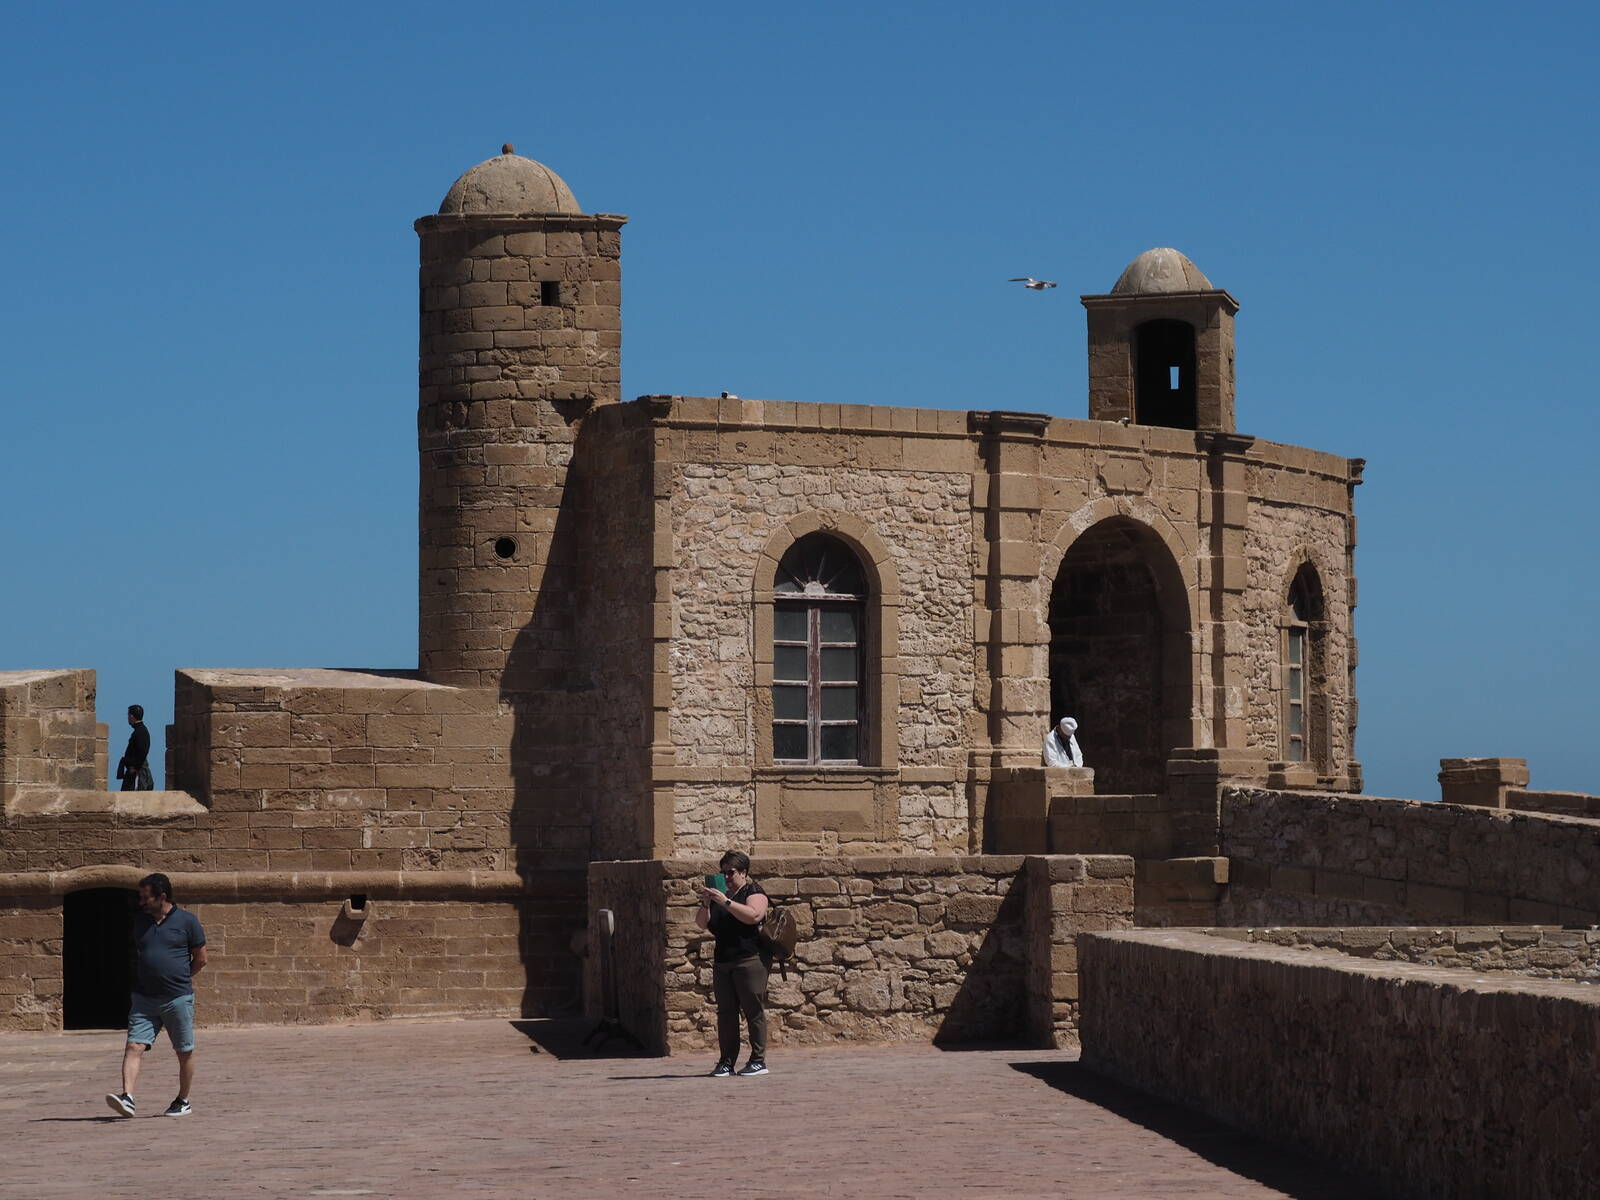 Image of Essaouira City Walls by Bettina Hornhardt